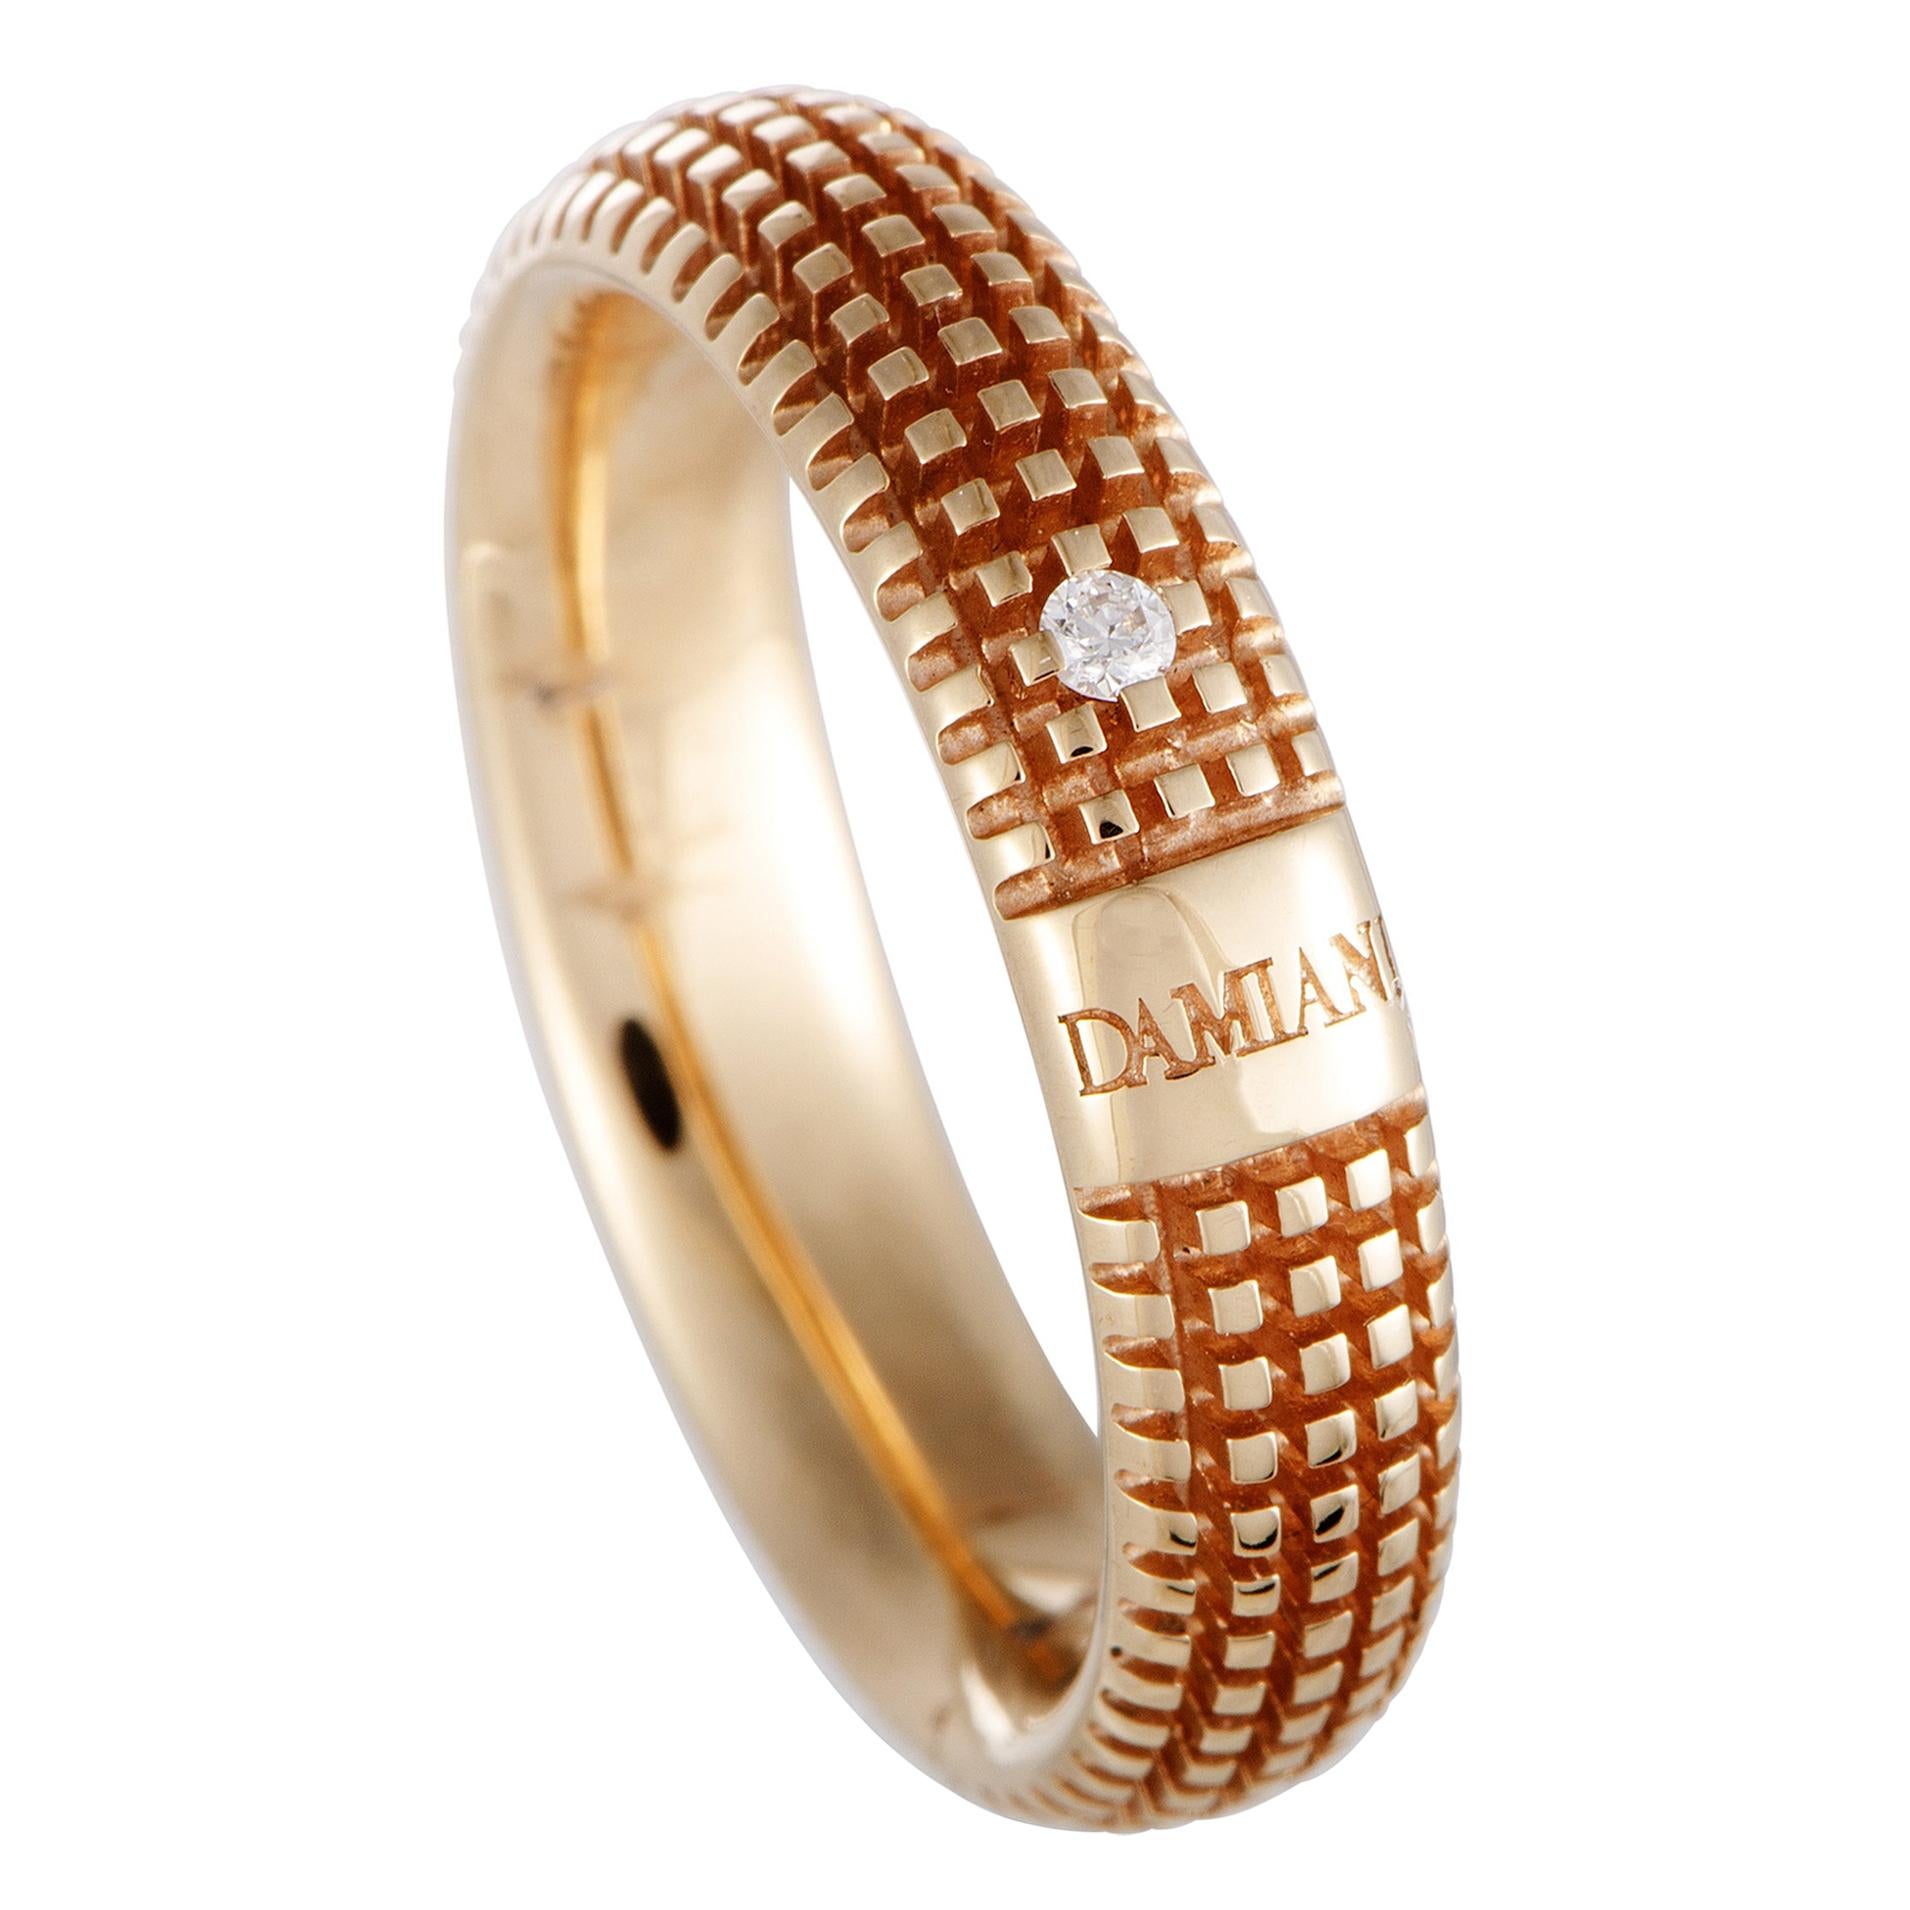 Damiani Metropolitan 18 Karat Rose Gold 1-Diamond Textured Band Ring